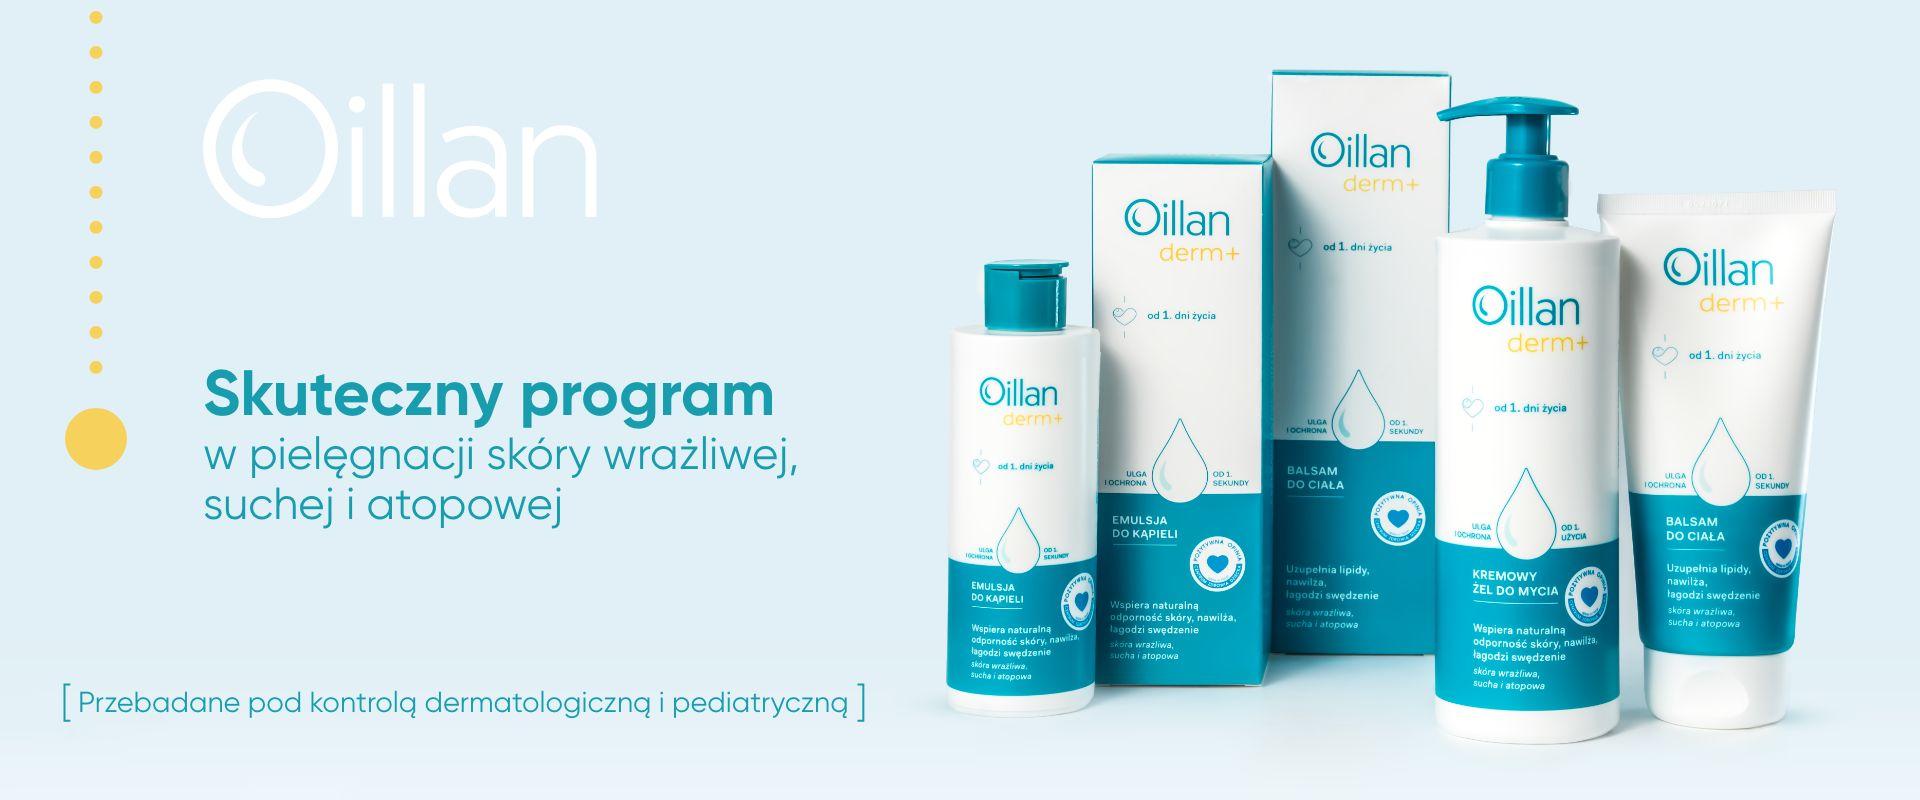 Kampania marki Oillan - nowa generacja emolientów 